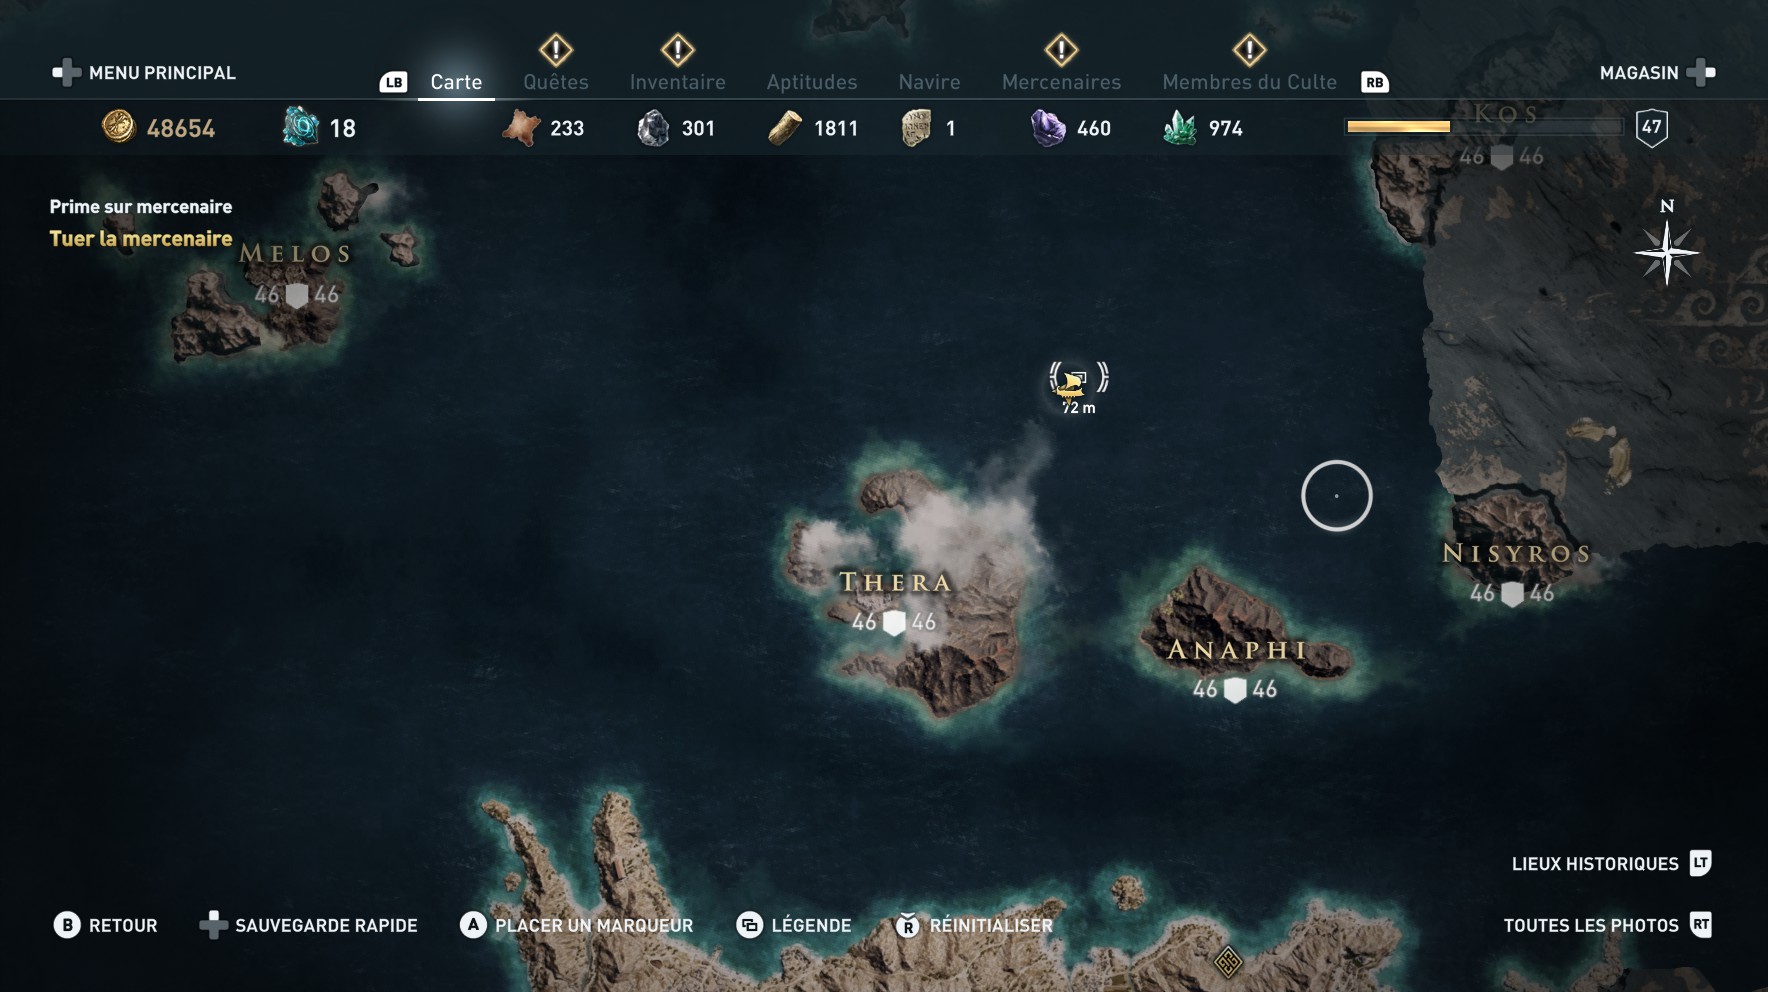 Assassin's Creed Odyssey trouver et tuer les adeptes du culte du Kosmos, ps4,, xbox one, pc, ubisoft, jeu vidéo, le requin de mytilène, dieux de la mer égée